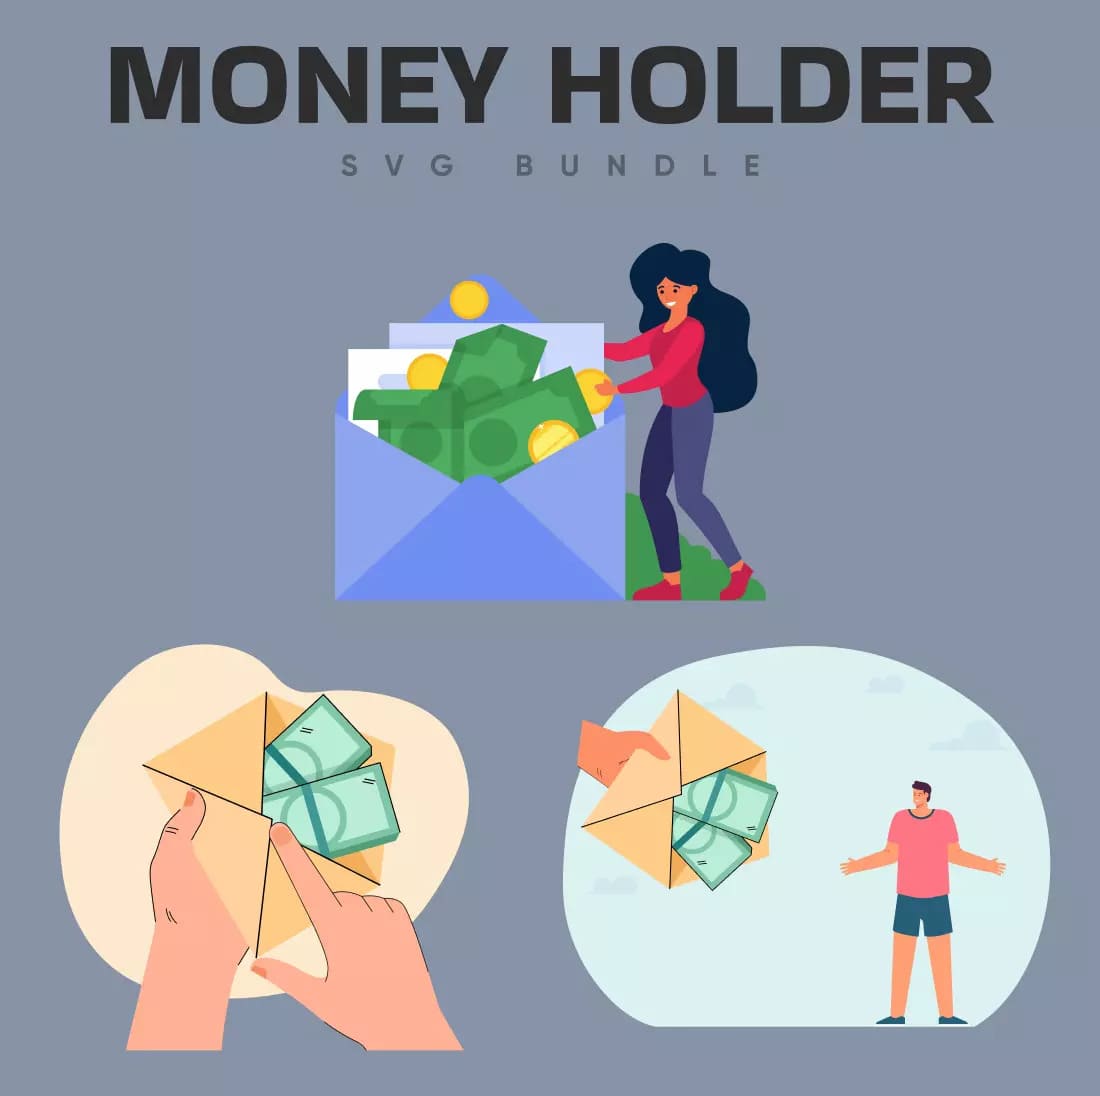 Money Holder SVG Bundle Preview image.